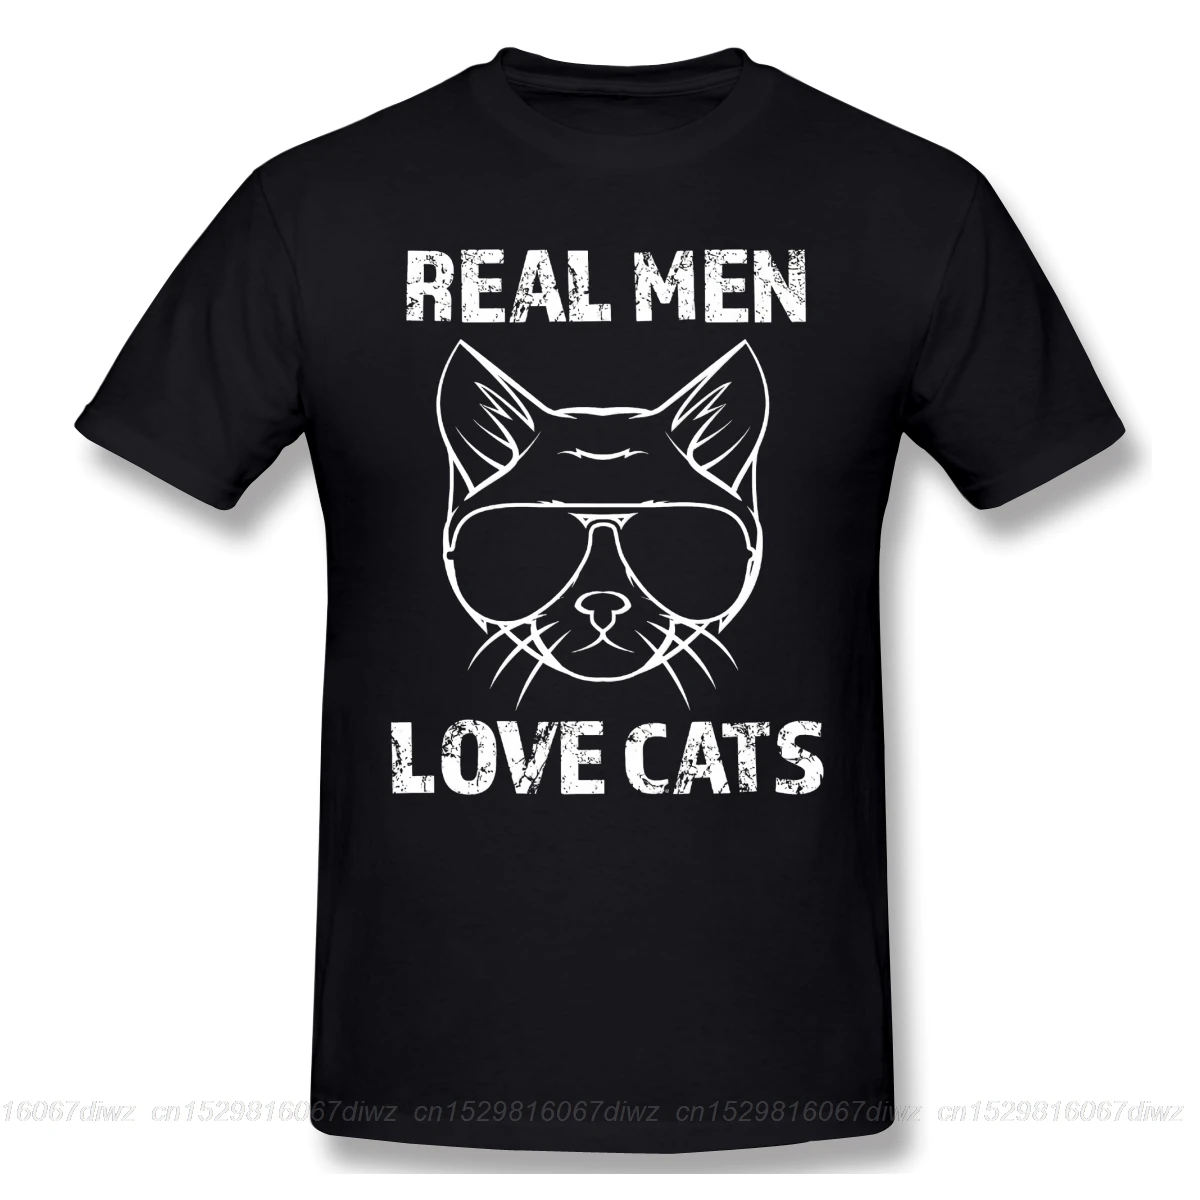 Śmieszna koszulka czerwona koszulka 6xl śliczna koszulka graficzna prawdziwi mężczyźni kochają koty moda męska z krótkim rękawem 100 bawełniana koszulka